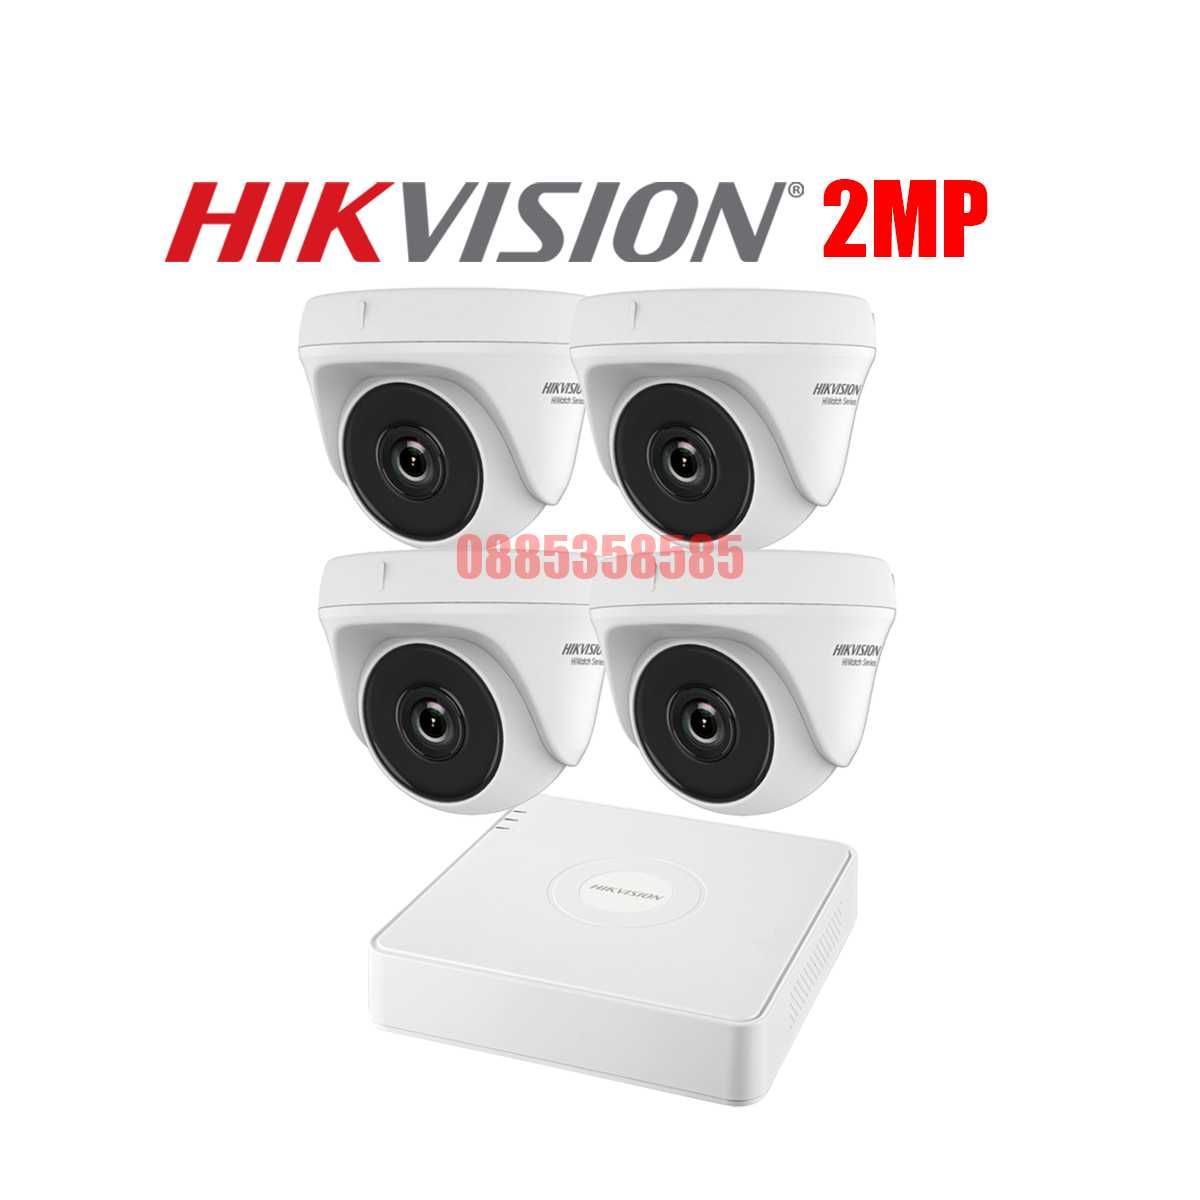 HIKVISION Комплект за Видеонаблюдение 2MP с 4 Камери и Хибриден DVR